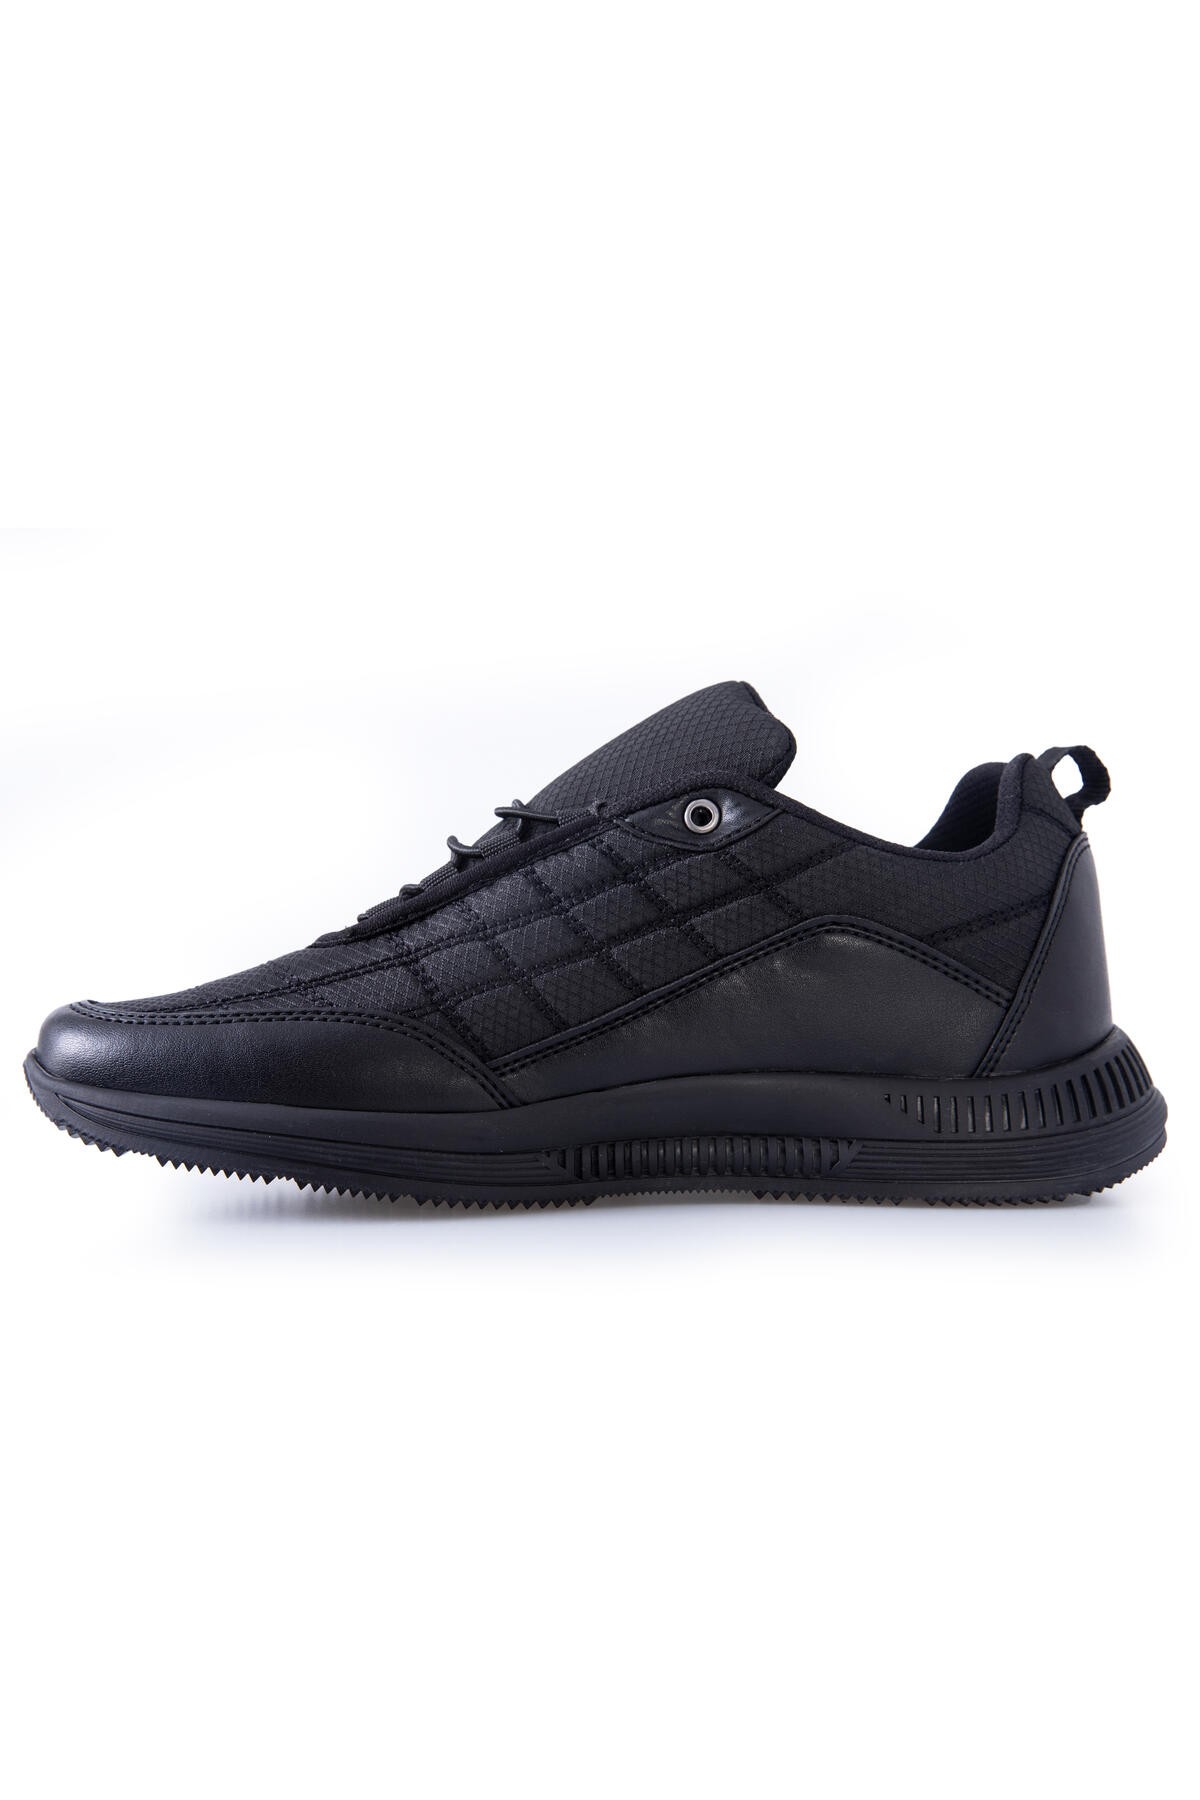 Siyah Bağcıklı Kapitone Suni Deri Detaylı Erkek Spor Ayakkabı - 89096